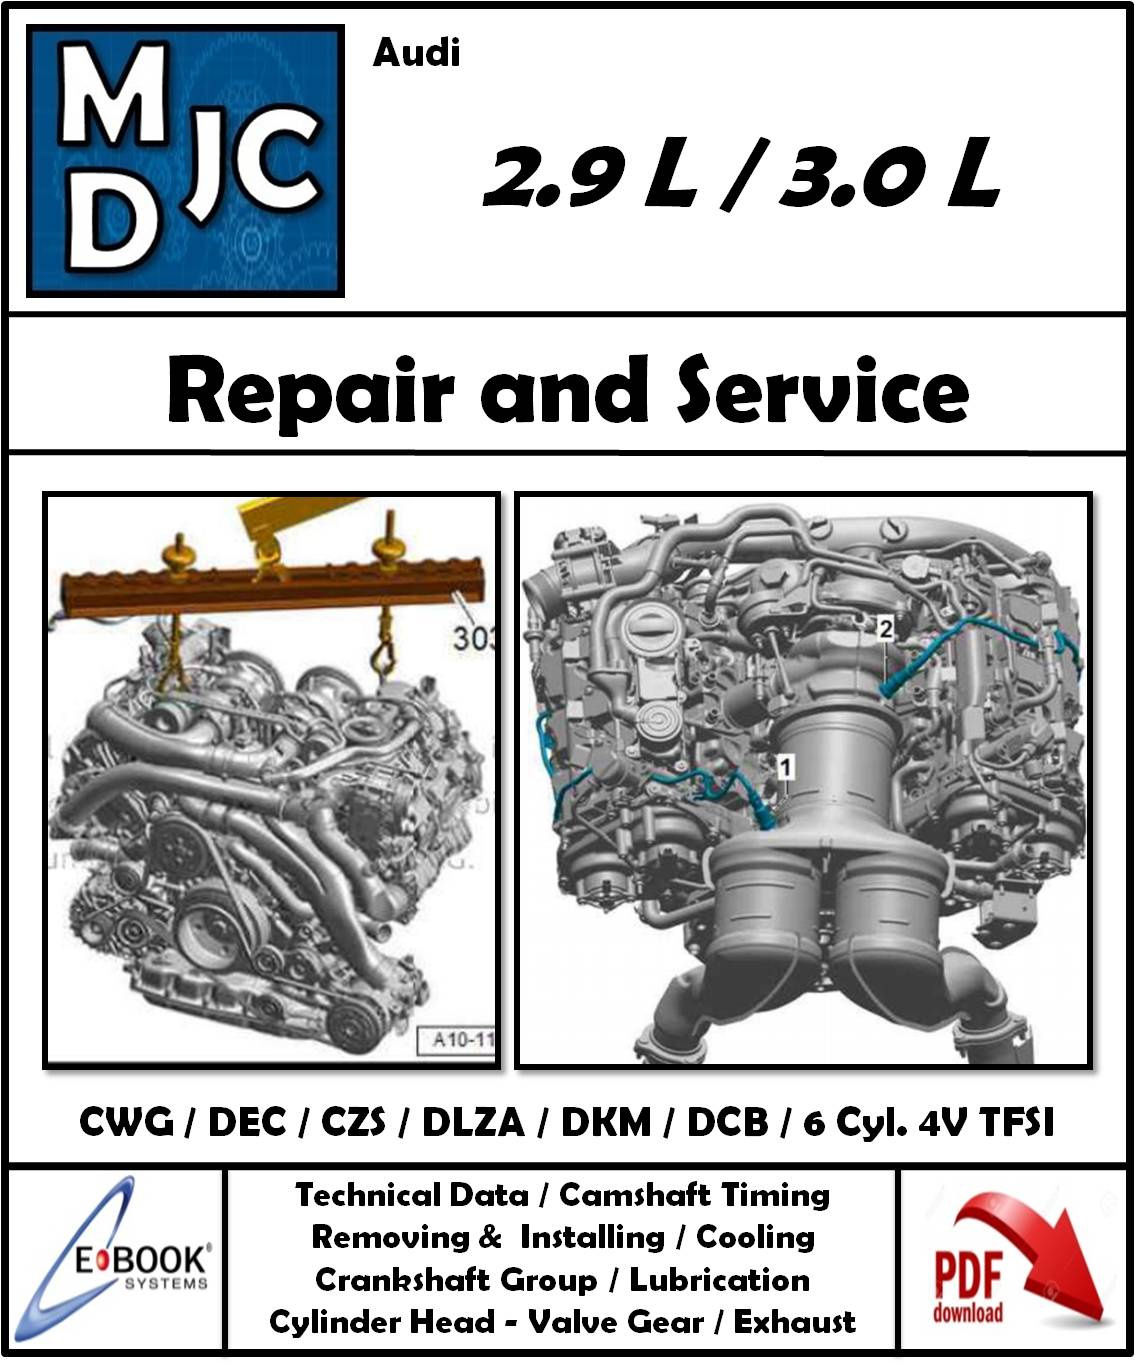 Manual de Taller (Reparación) Motor Audi 2.9 L / 3.0 L - 6 Cil. 4V TFSI